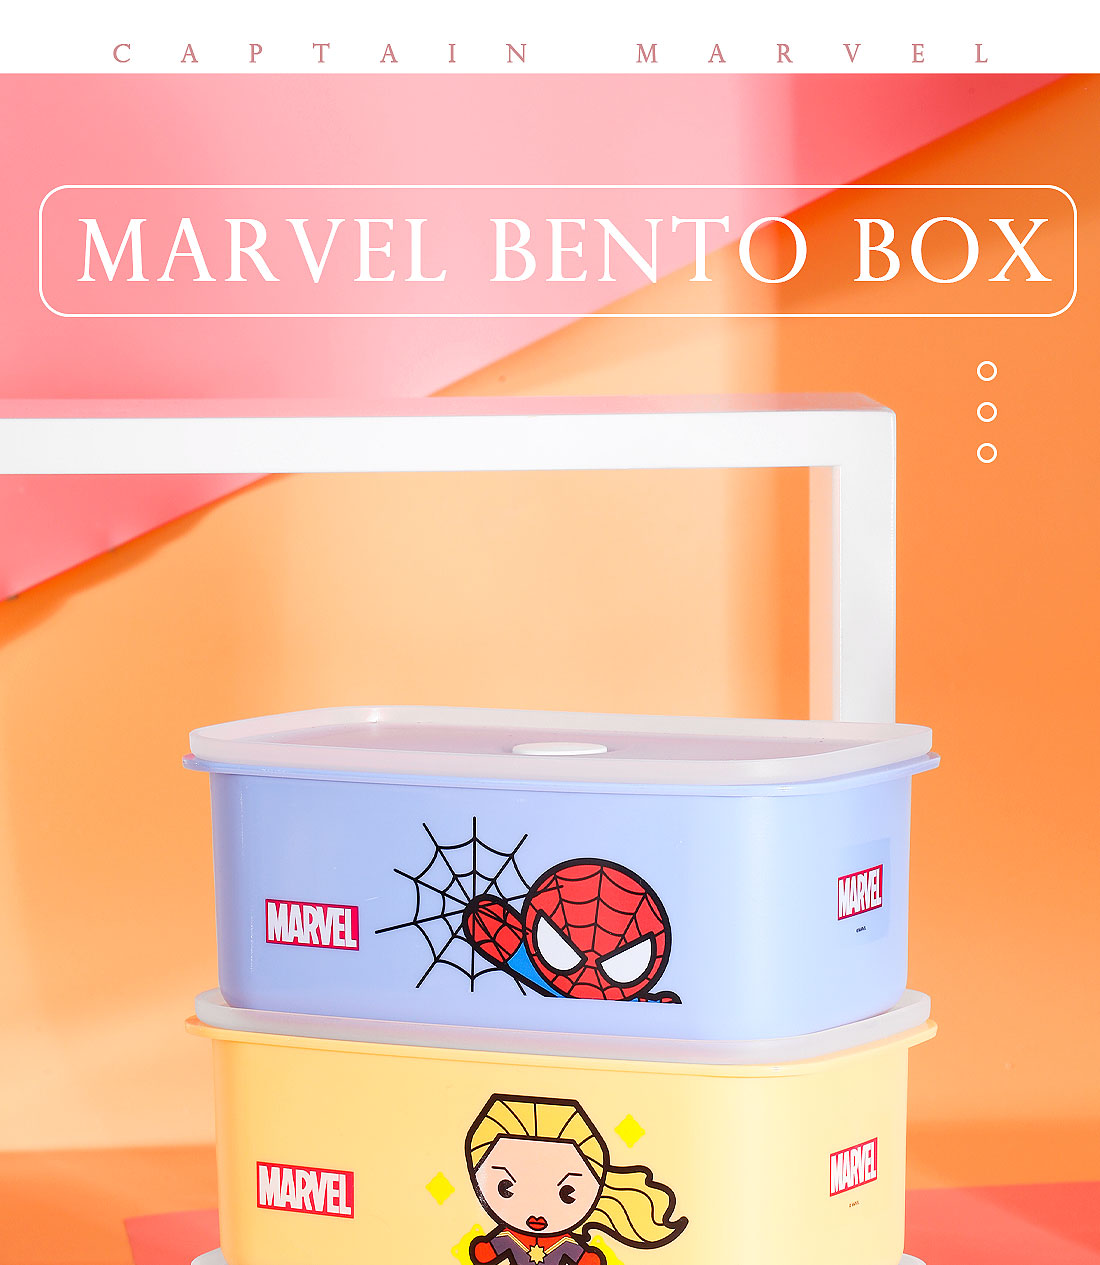 Miniso MARVEL Bento Box,Captain Marvel 2007235811102